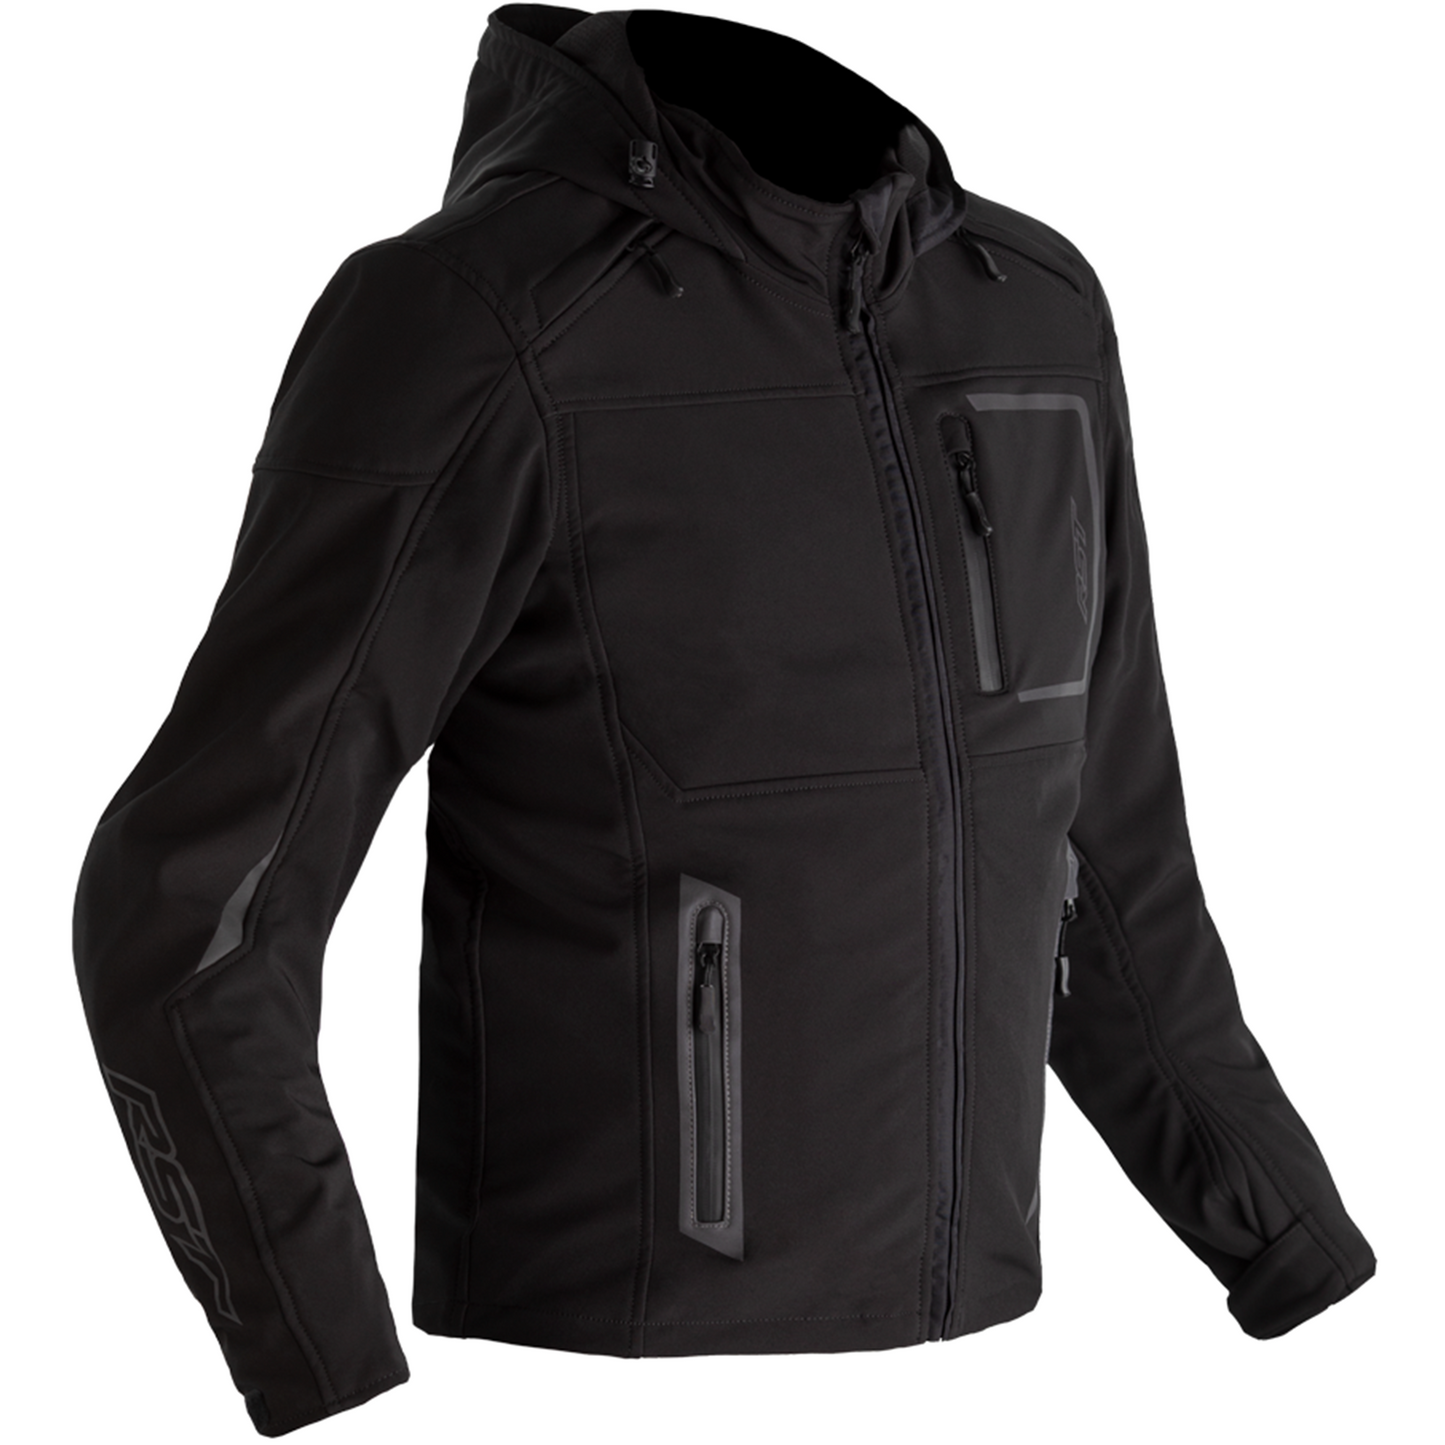 RST Frontline (CE) Textile Jacket - Black (2731)